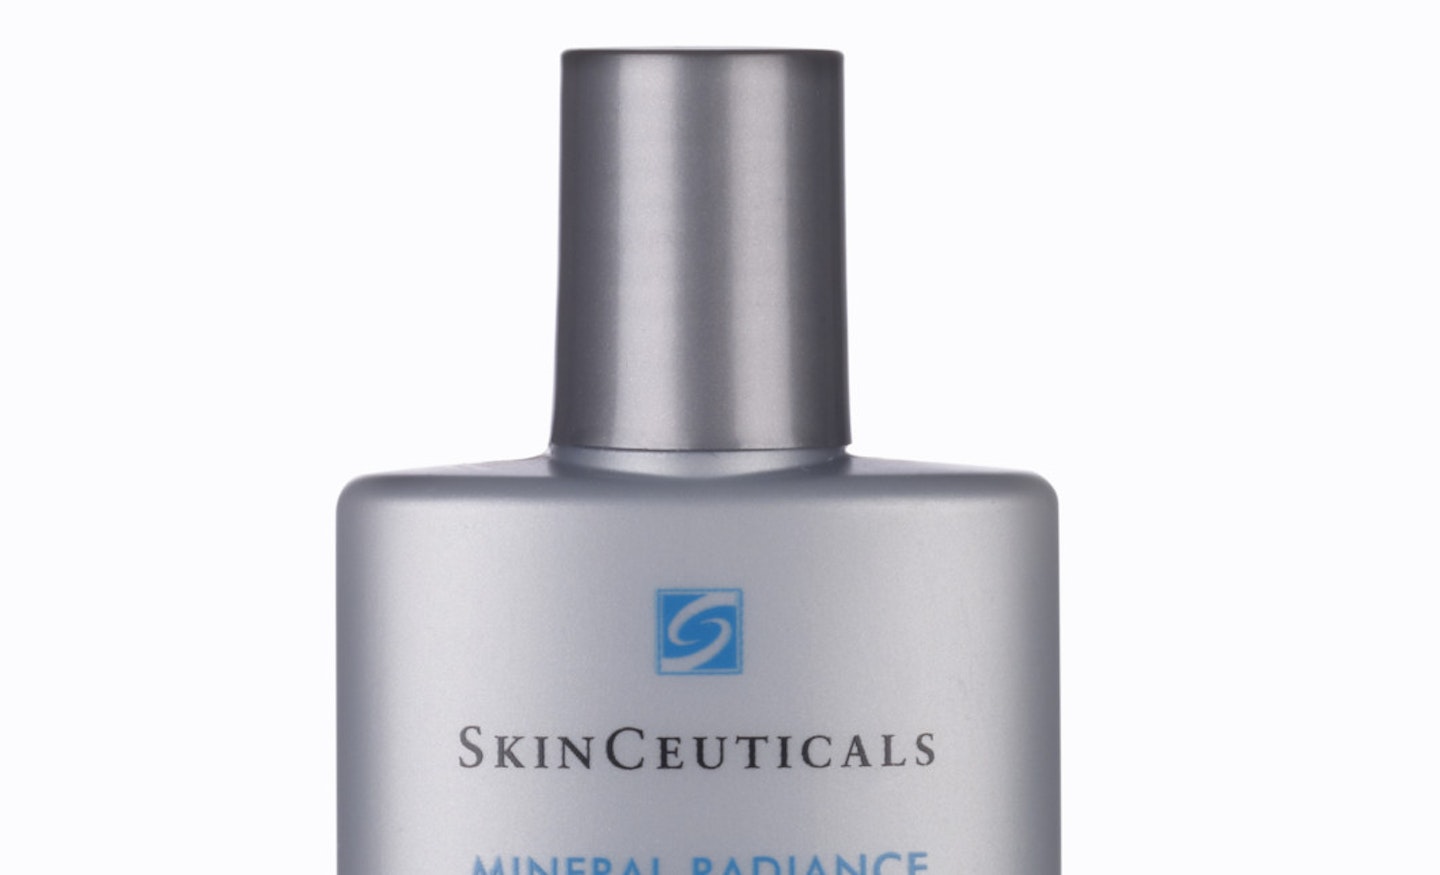 SkinCeuticals Mineral Radiance UV Defencse SPF 50, £35.00